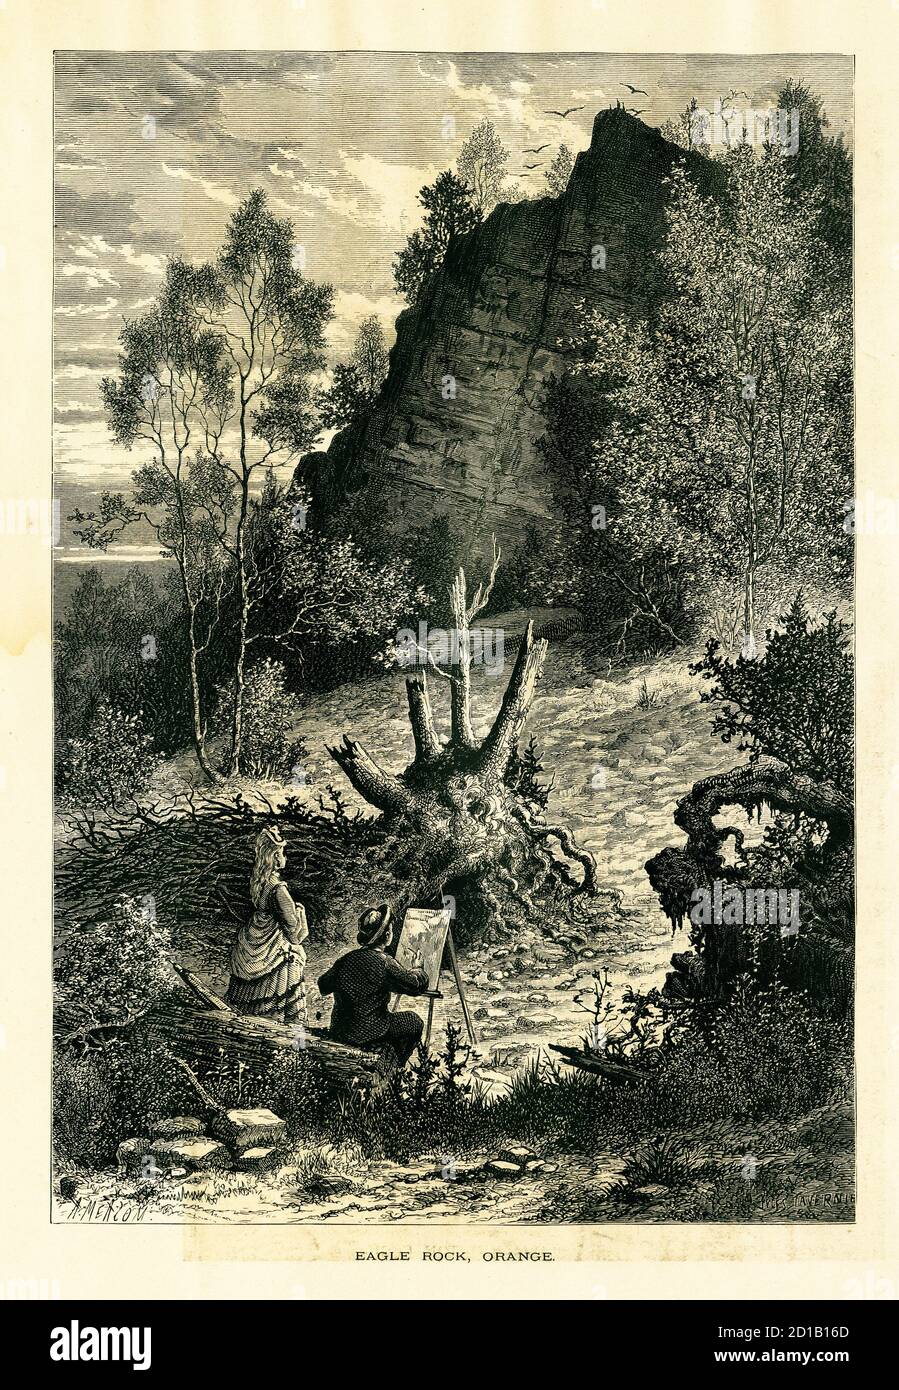 Ilustración antigua de Eagle Rock, una roca que sirve como límite entre las ciudades de Montclair y West Orange, estado de Nueva Jersey. Env Foto de stock